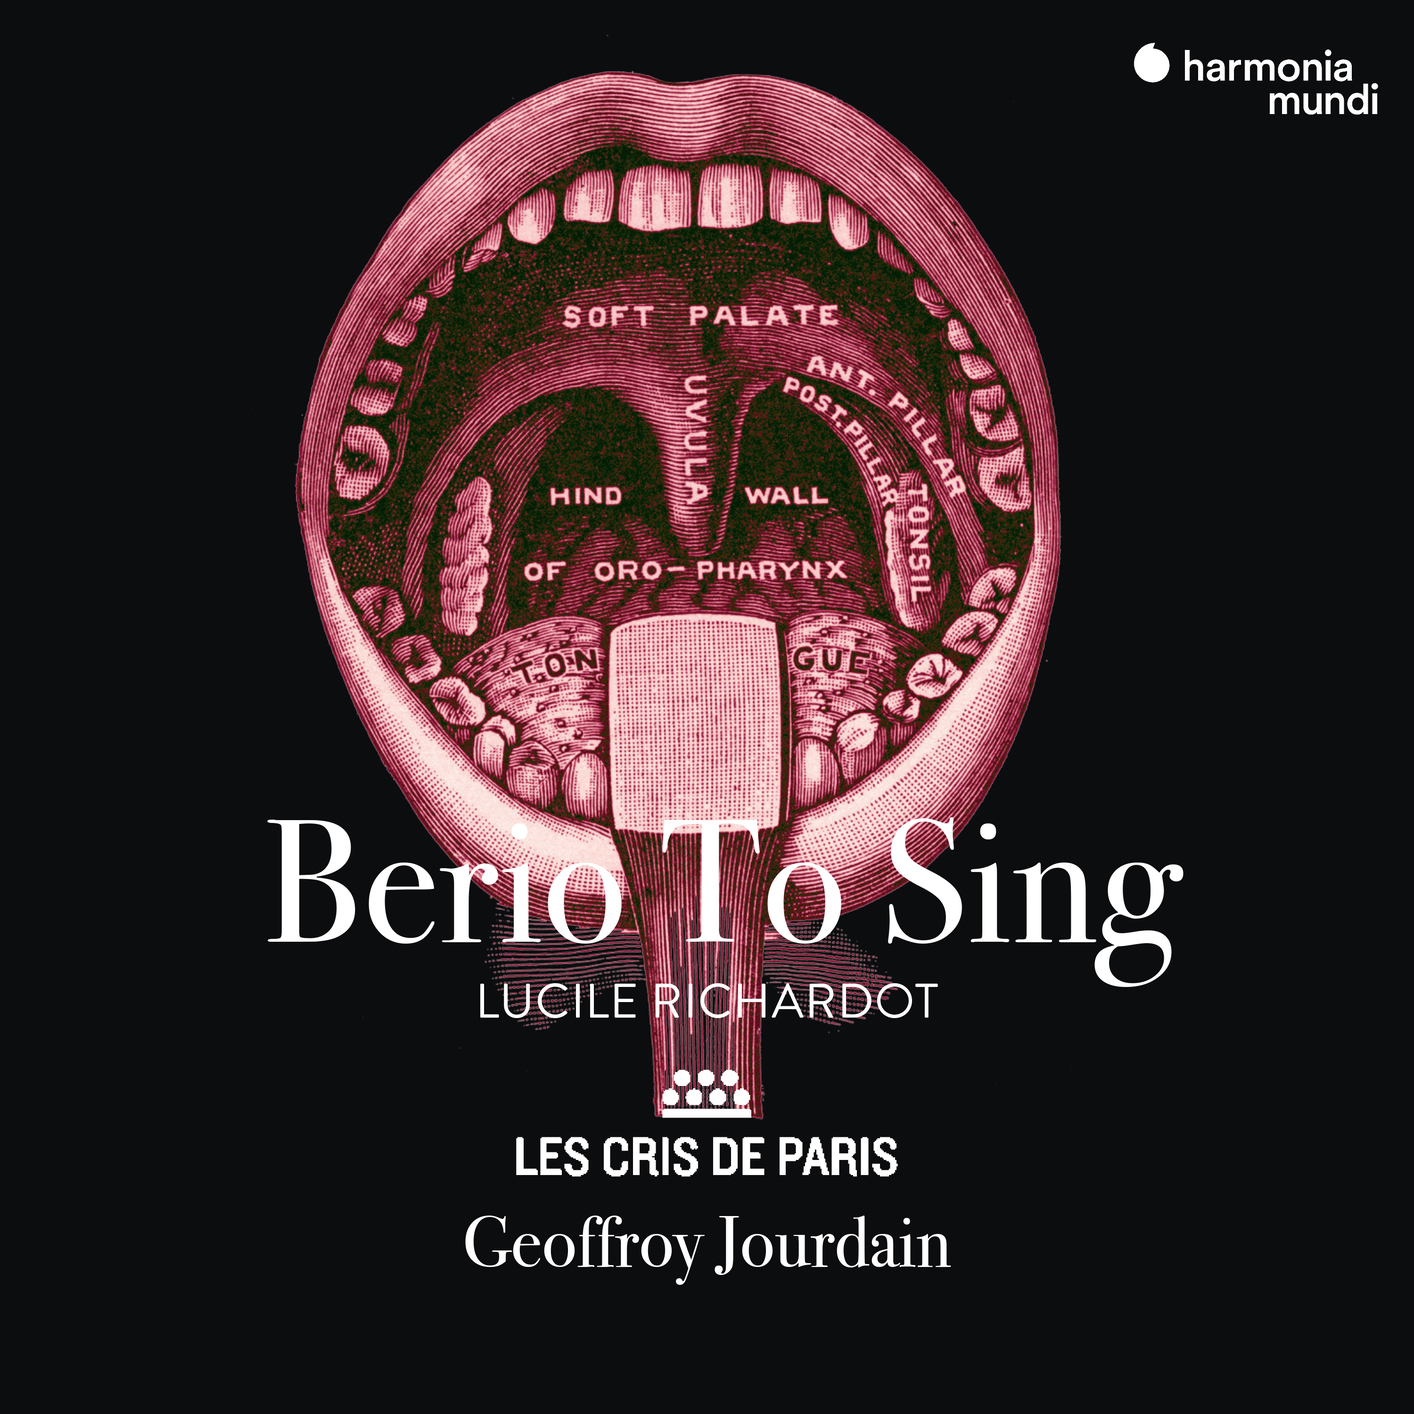 Lucile Richardot, Les Cris de Paris & Geoffroy Jourdain – Berio To Sing (2021) [FLAC 24bit/96kHz]